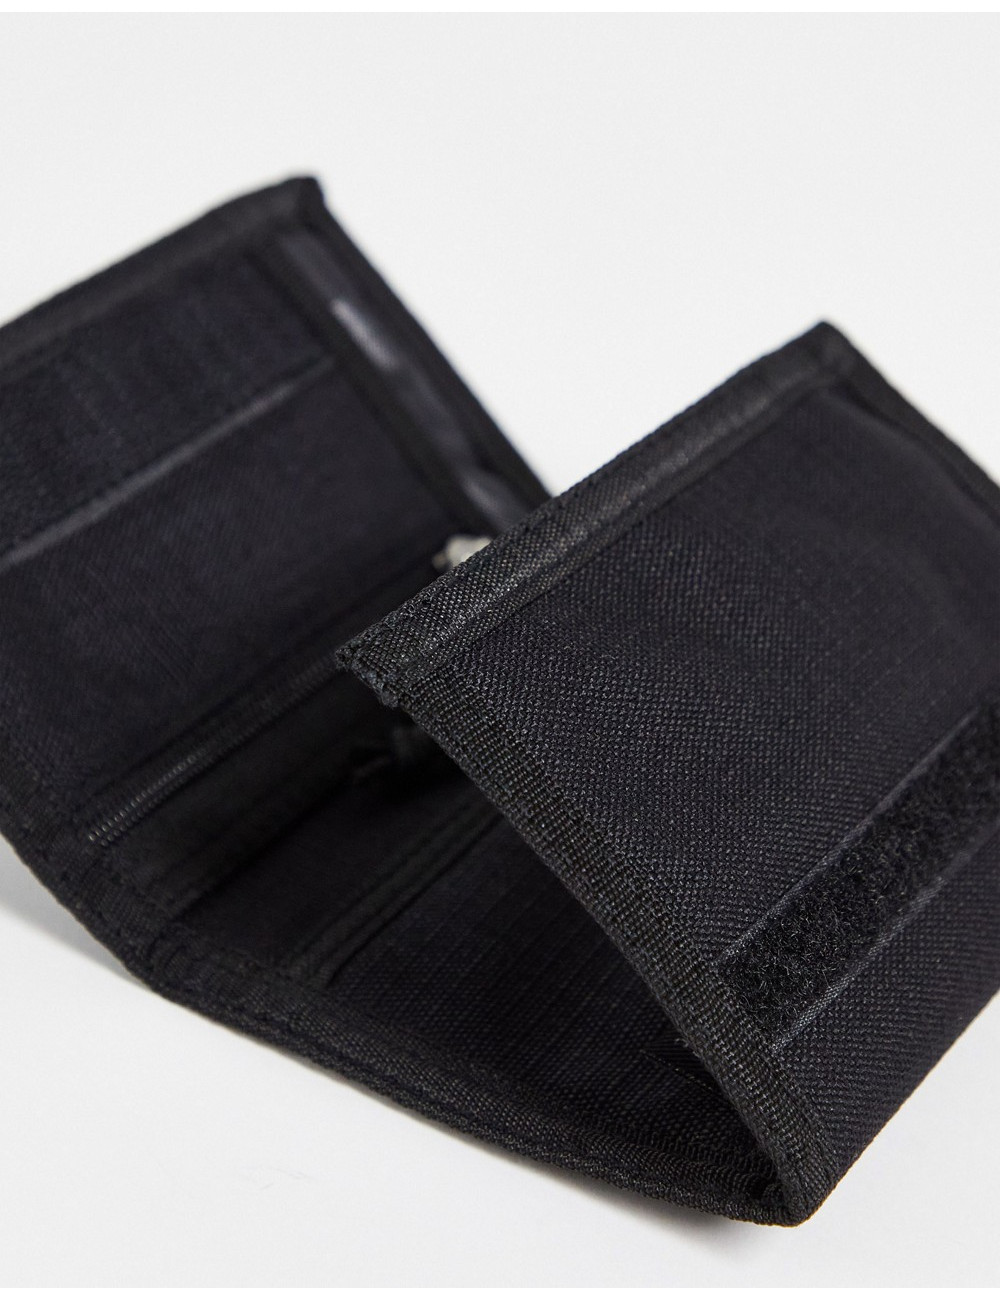 Vans Gaines wallet in black